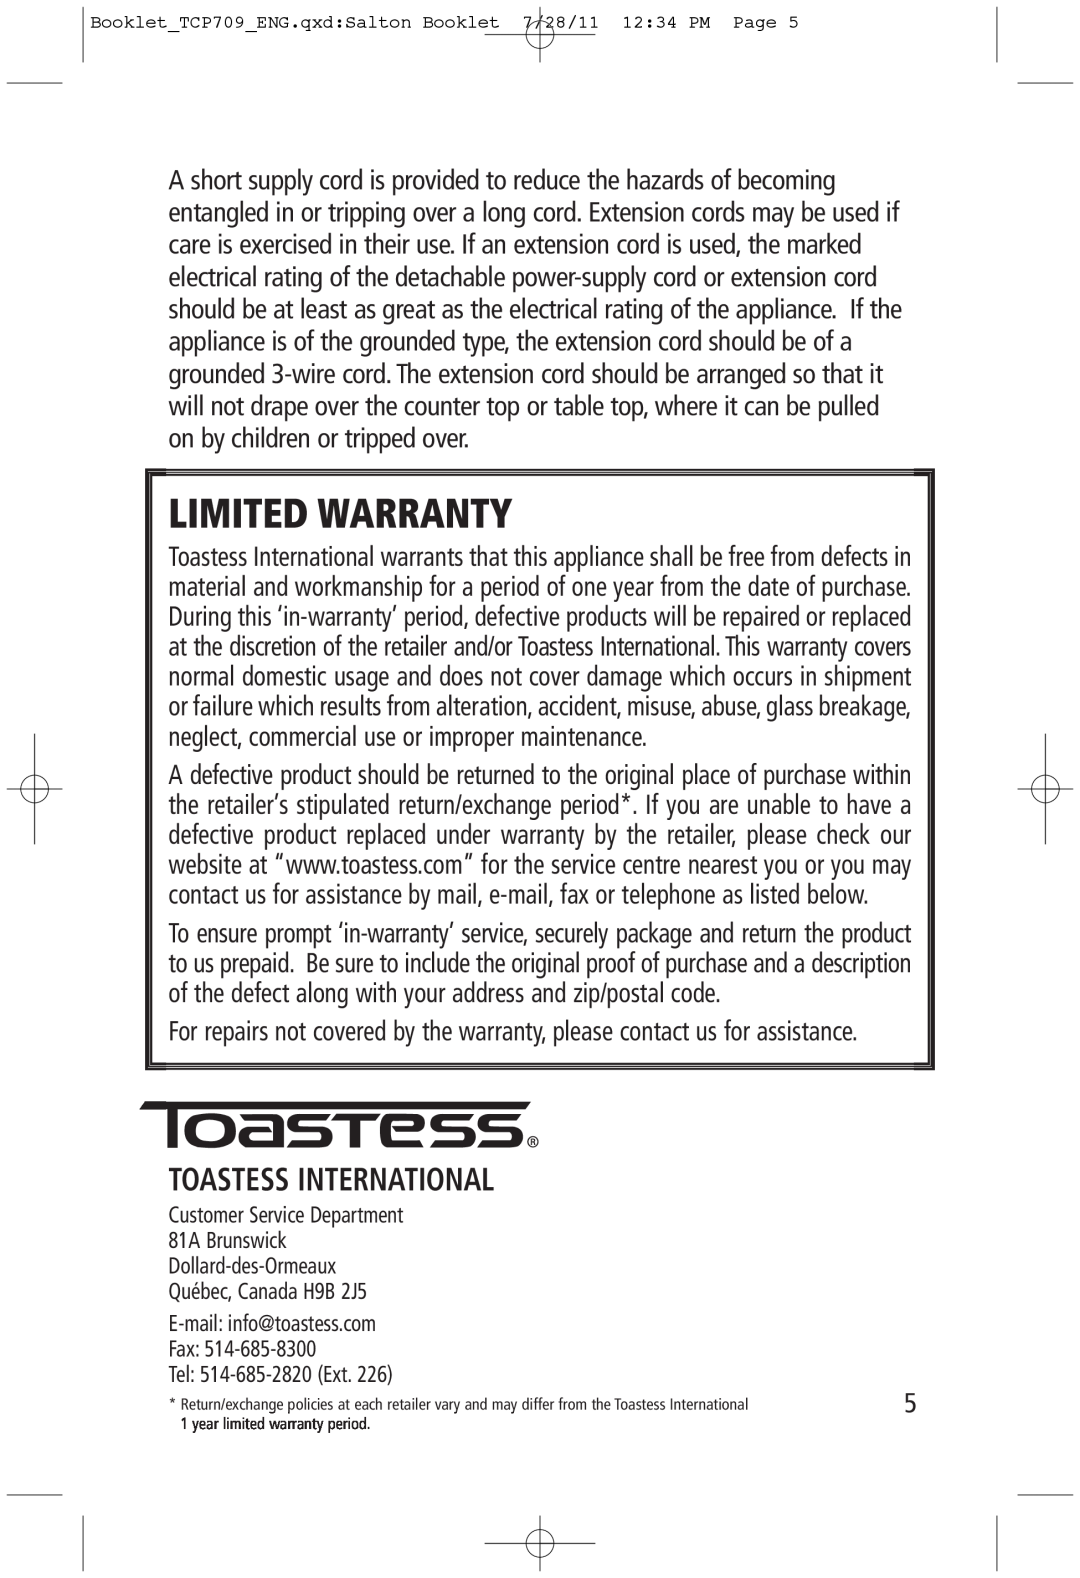 Toastess TCP709 manual Toastess International, Limited Warranty 